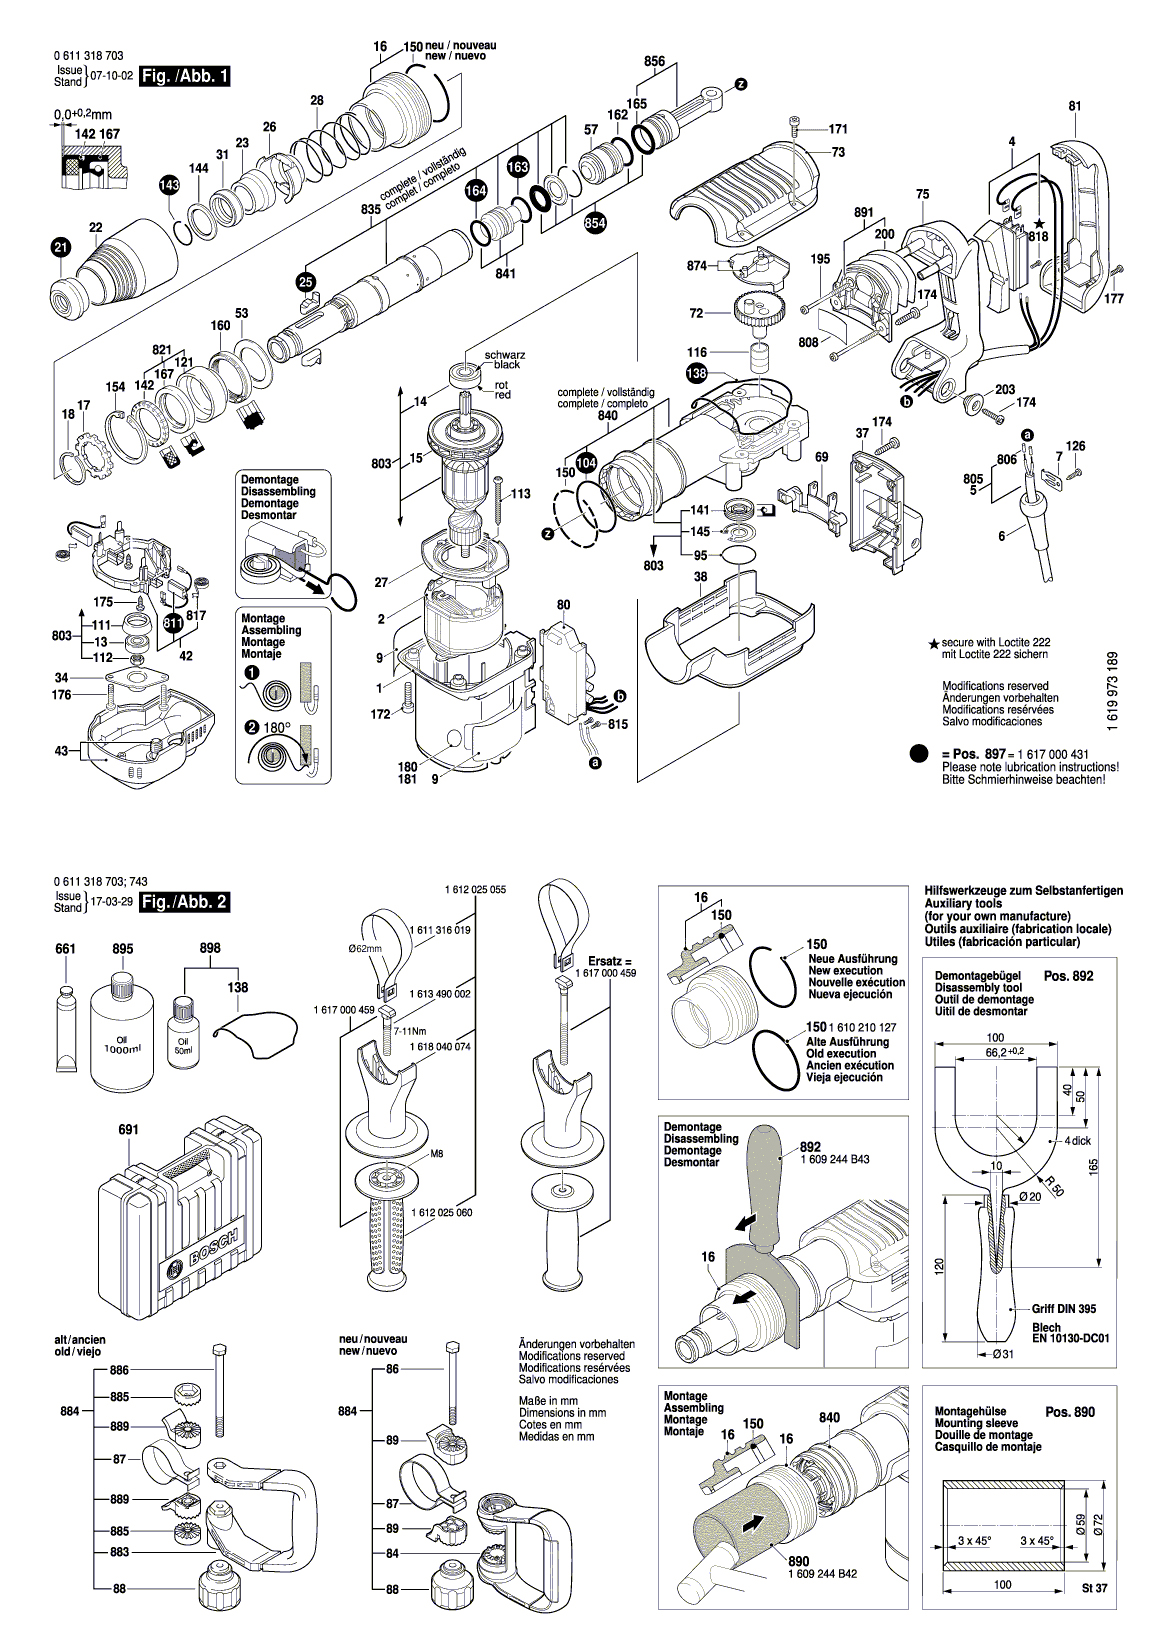 Схема на Відбійний молоток Bosch GSH 5 E (0 611 318 703)